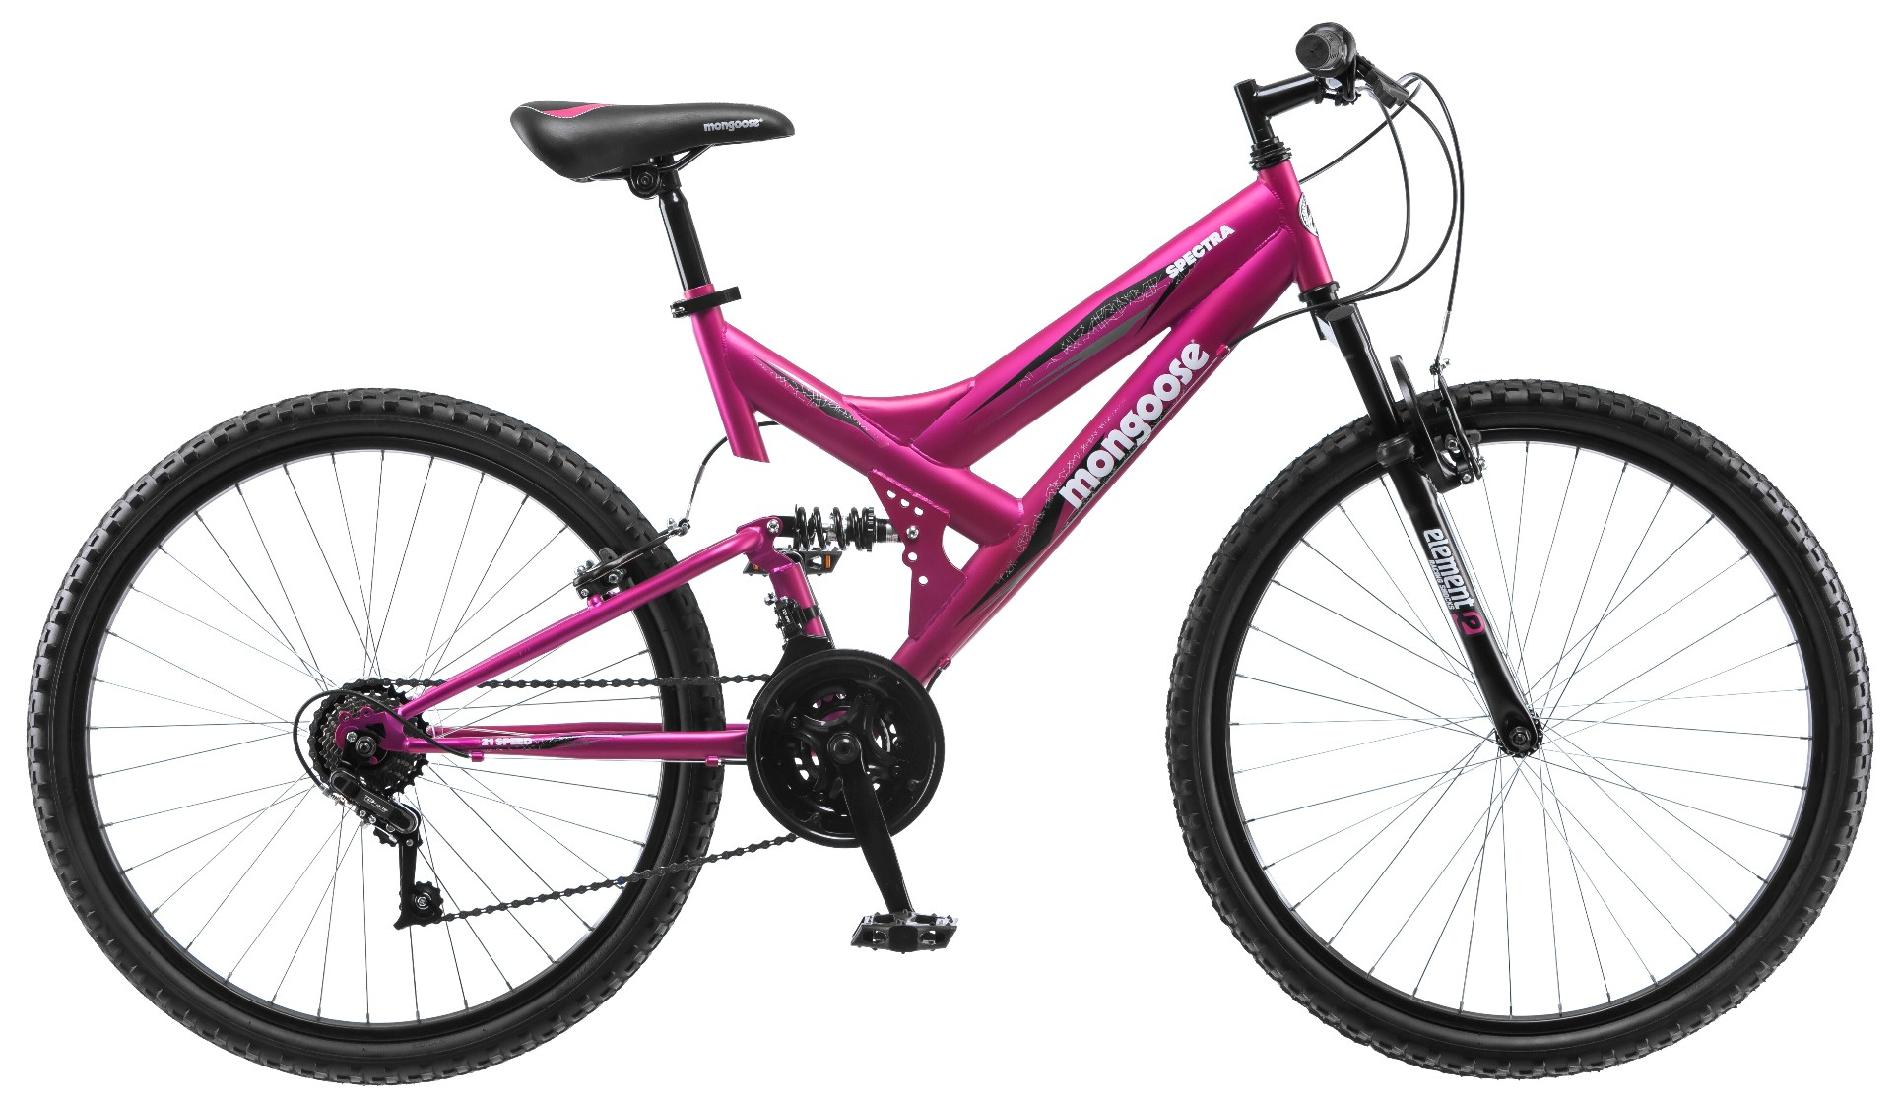 mongoose 26 inch women's bike